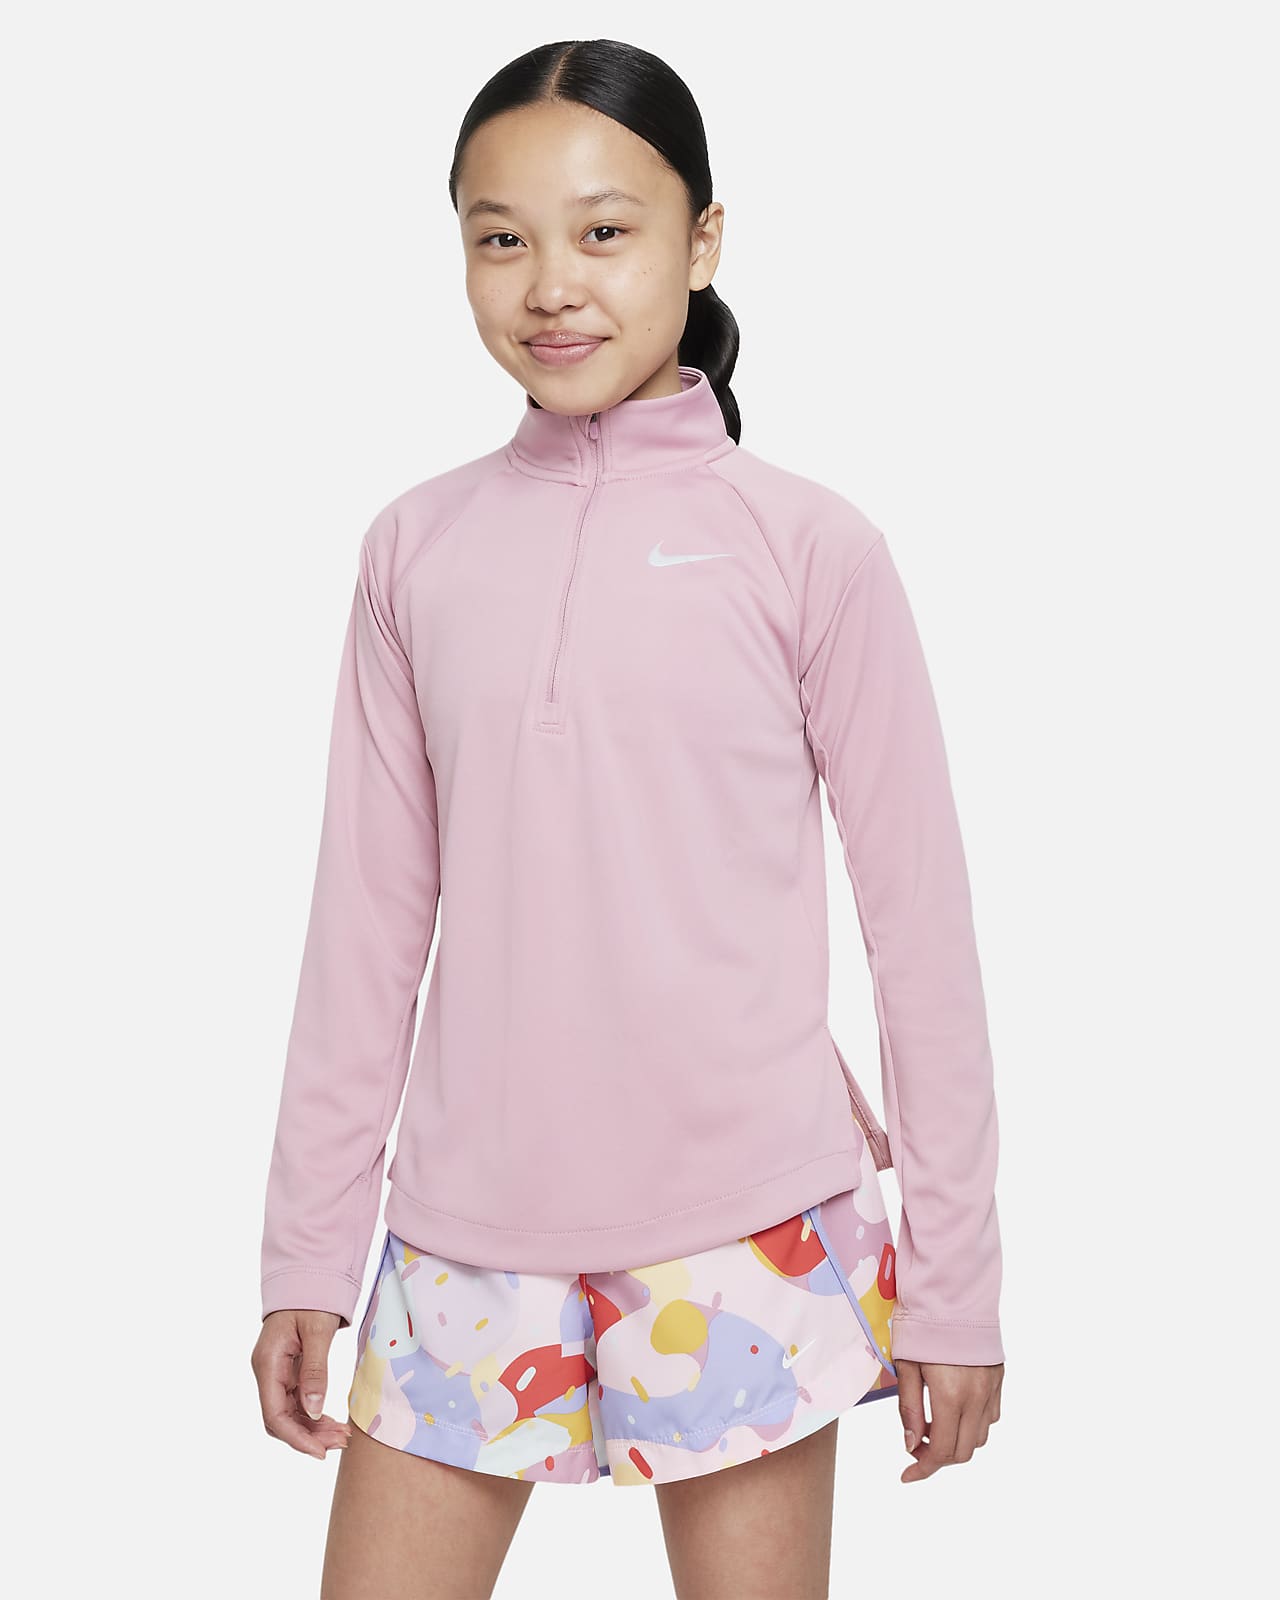 Běžecká mikina Nike Dri-FIT s dlouhým rukávem pro větší děti (dívky)